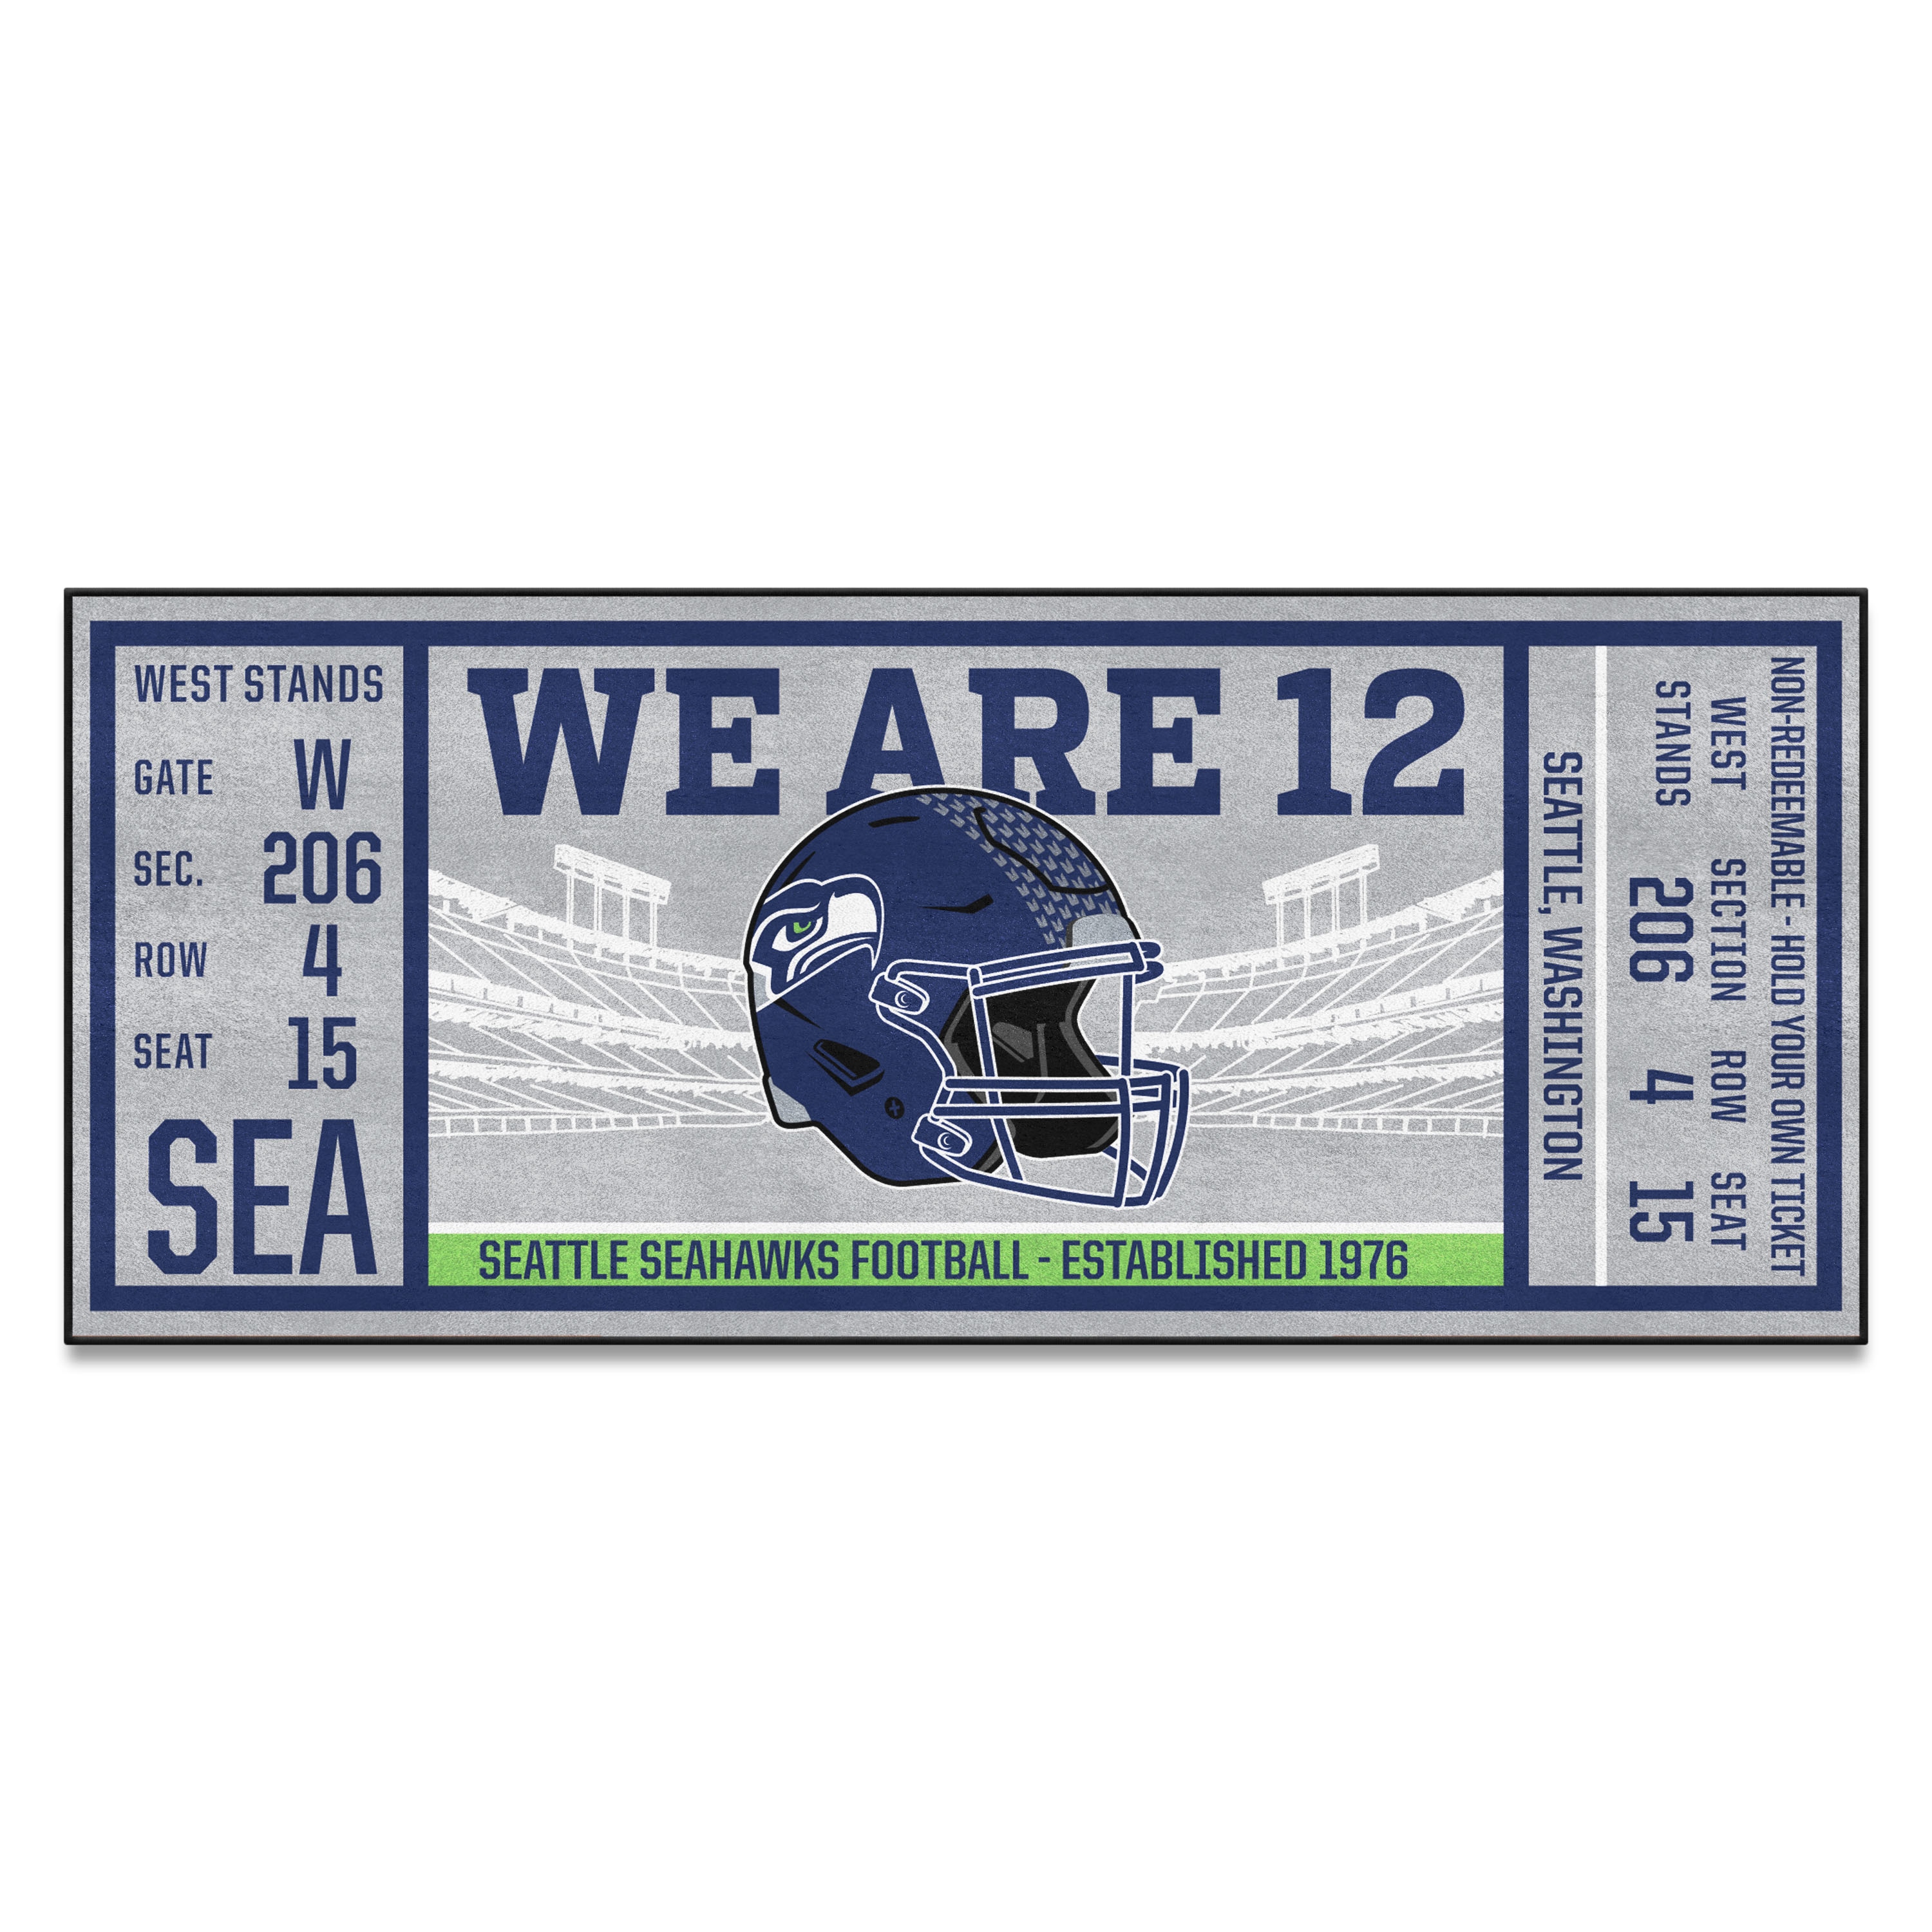 Seahawks Multi-Game Ticket Packs  Seattle Seahawks –